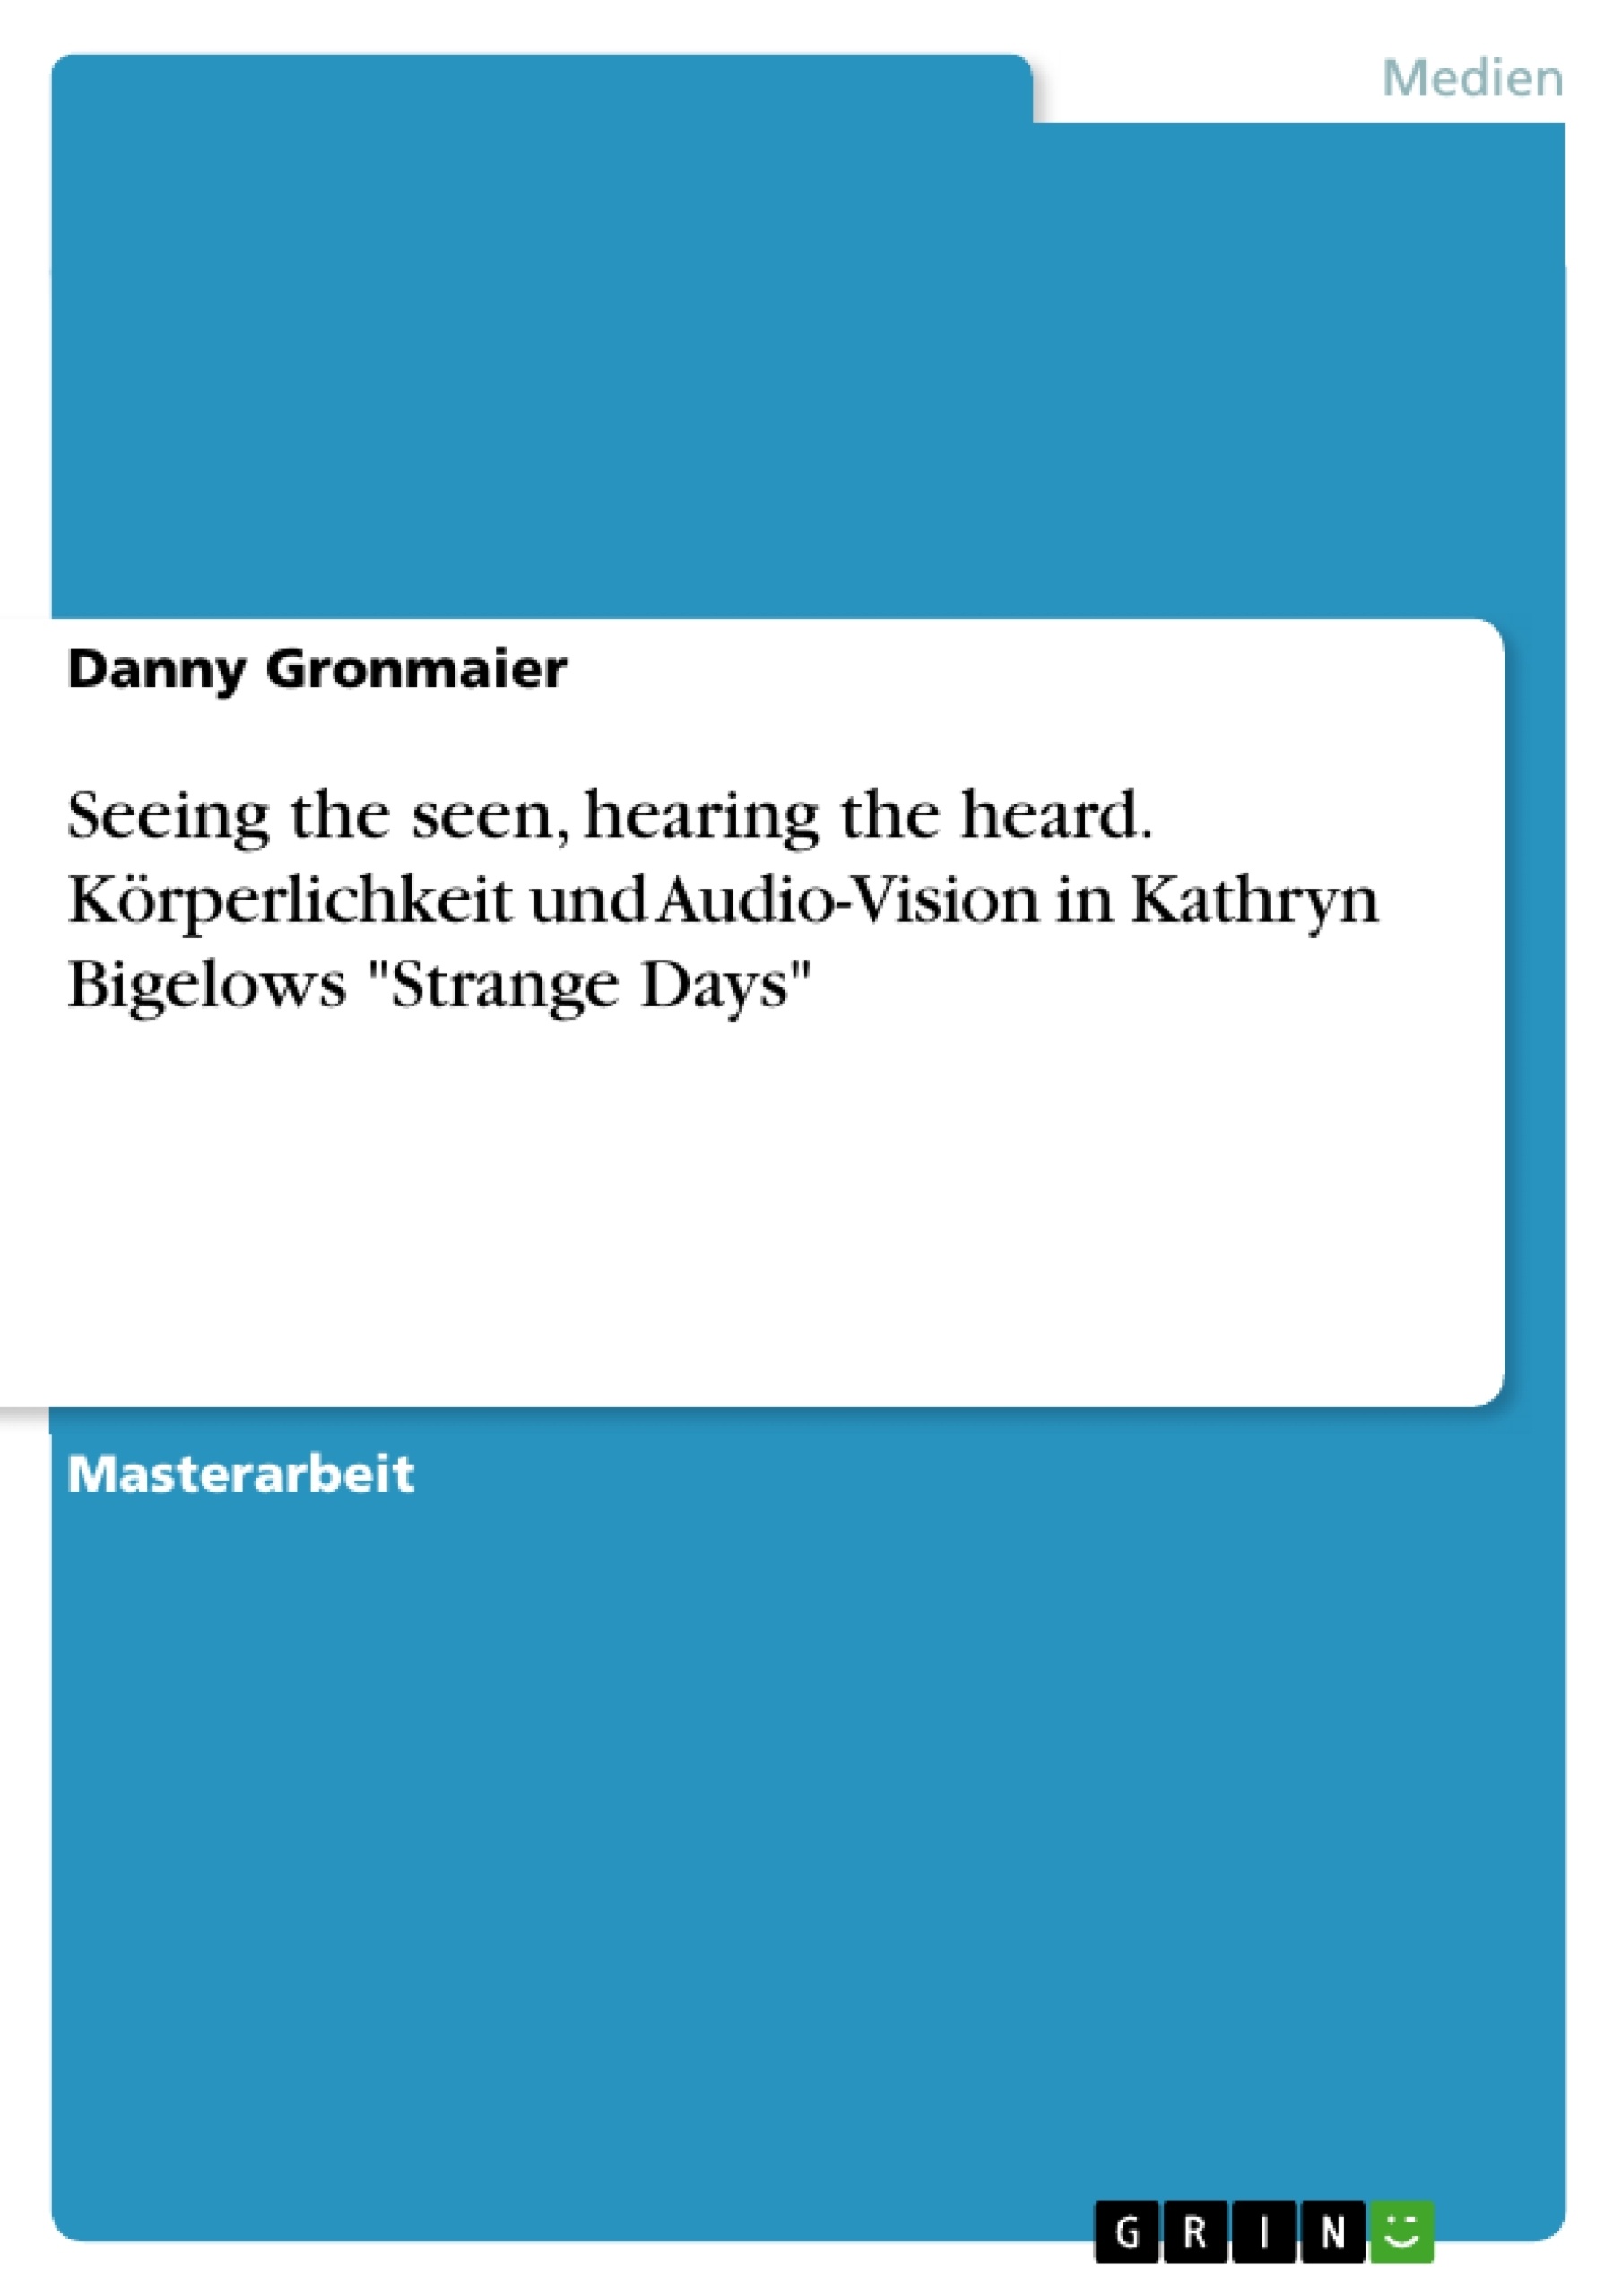 Título: Seeing the seen, hearing the heard. Körperlichkeit und Audio-Vision in Kathryn Bigelows "Strange Days"